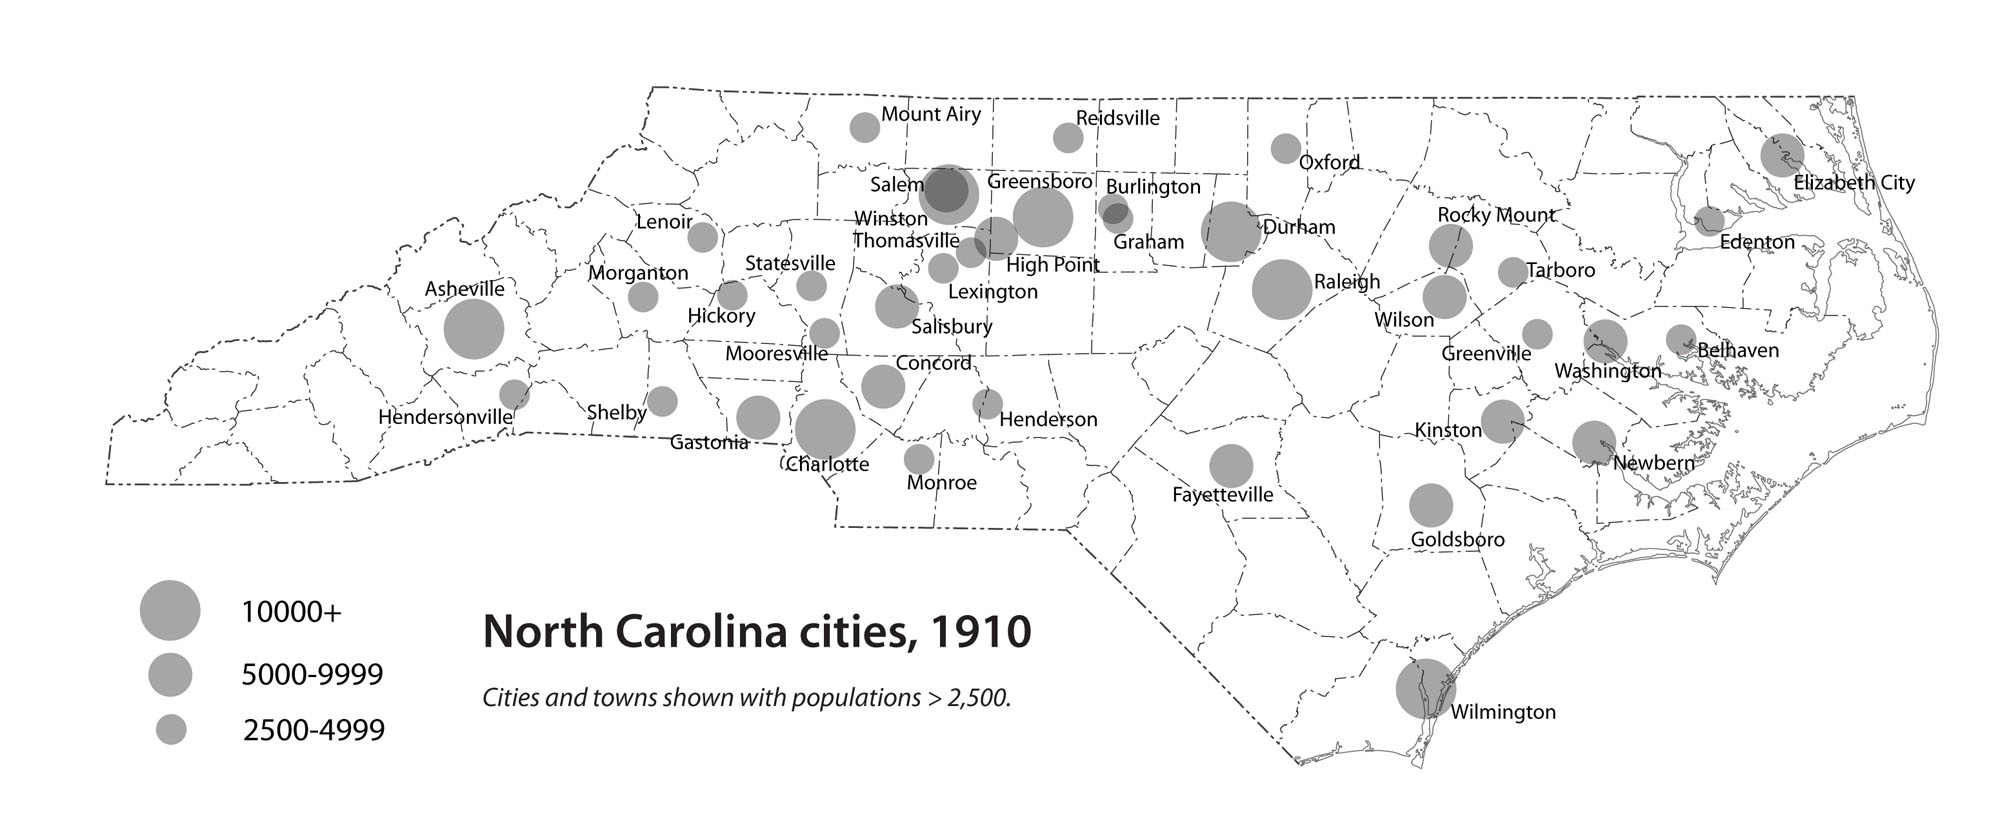 North Carolina cities, 1910